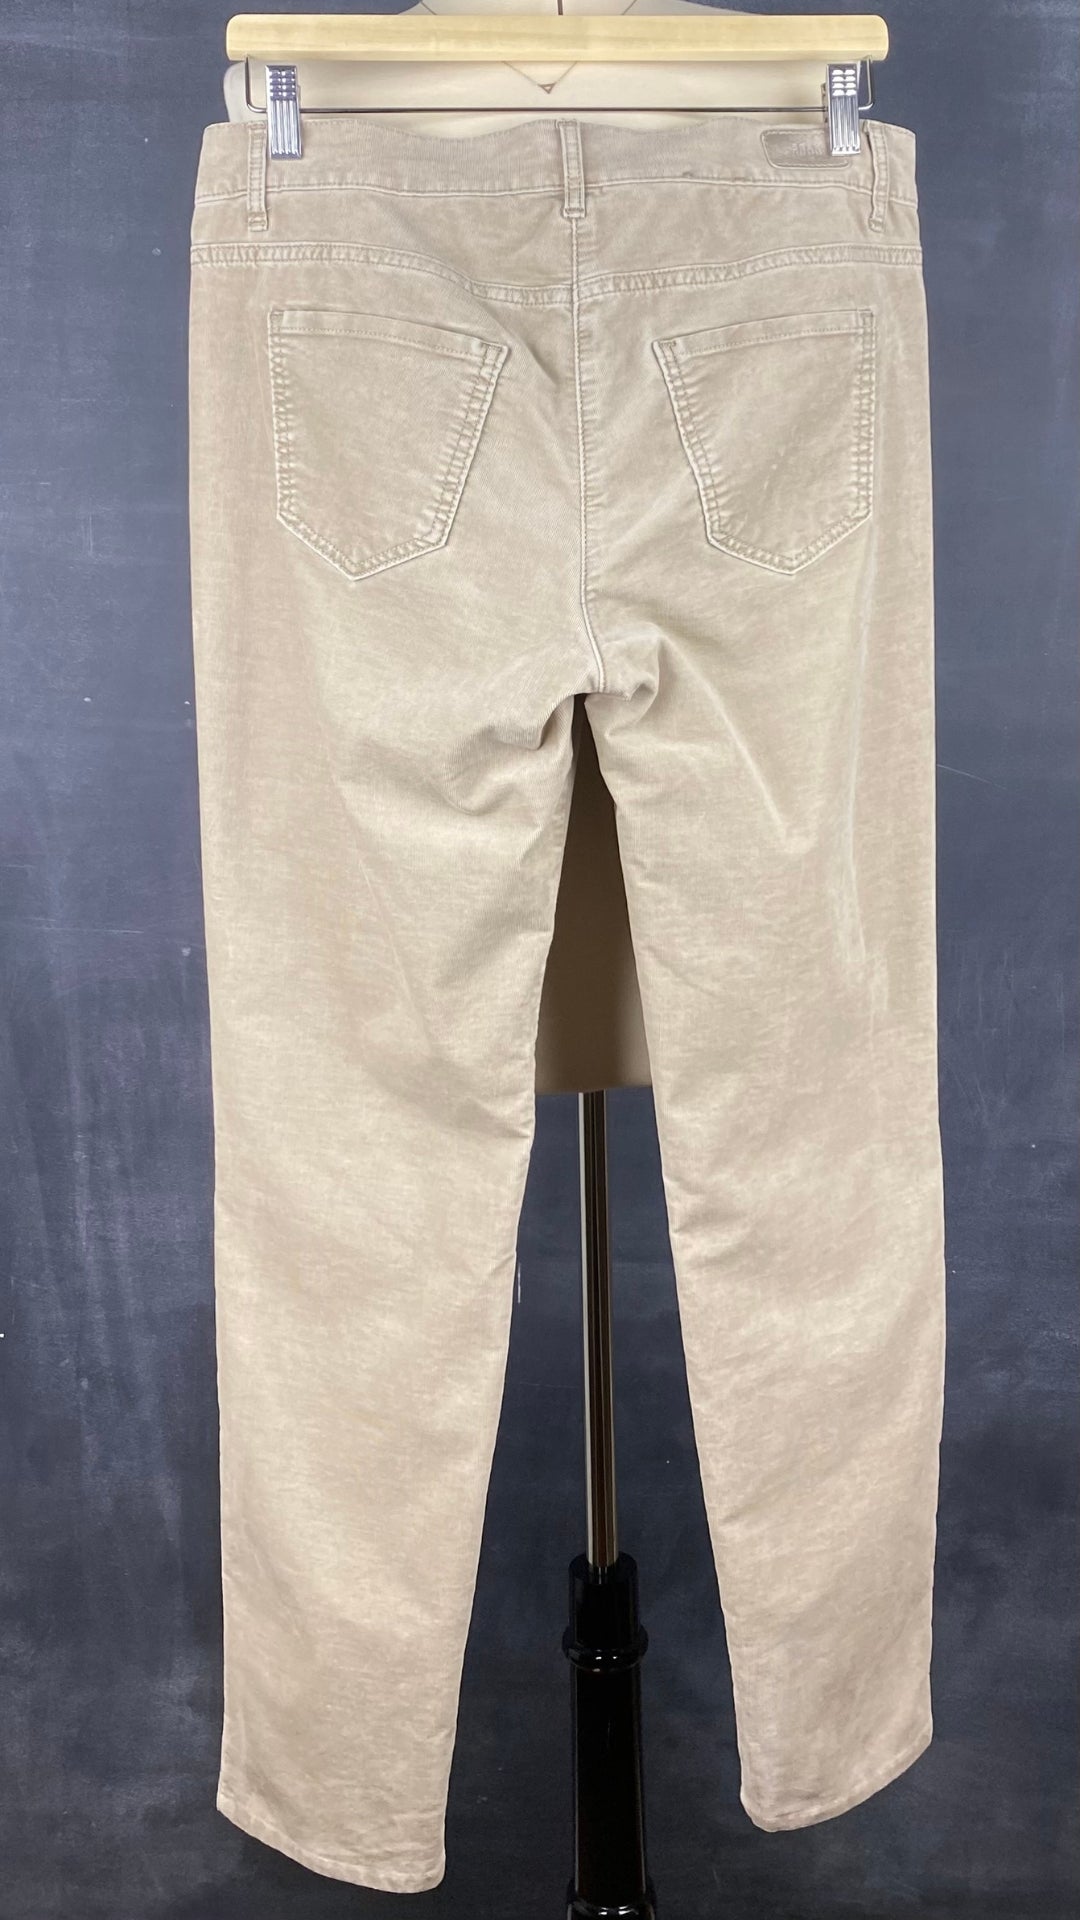 Pantalon en fin velours côtelé beige Brax, taille 31. Vue de dos.